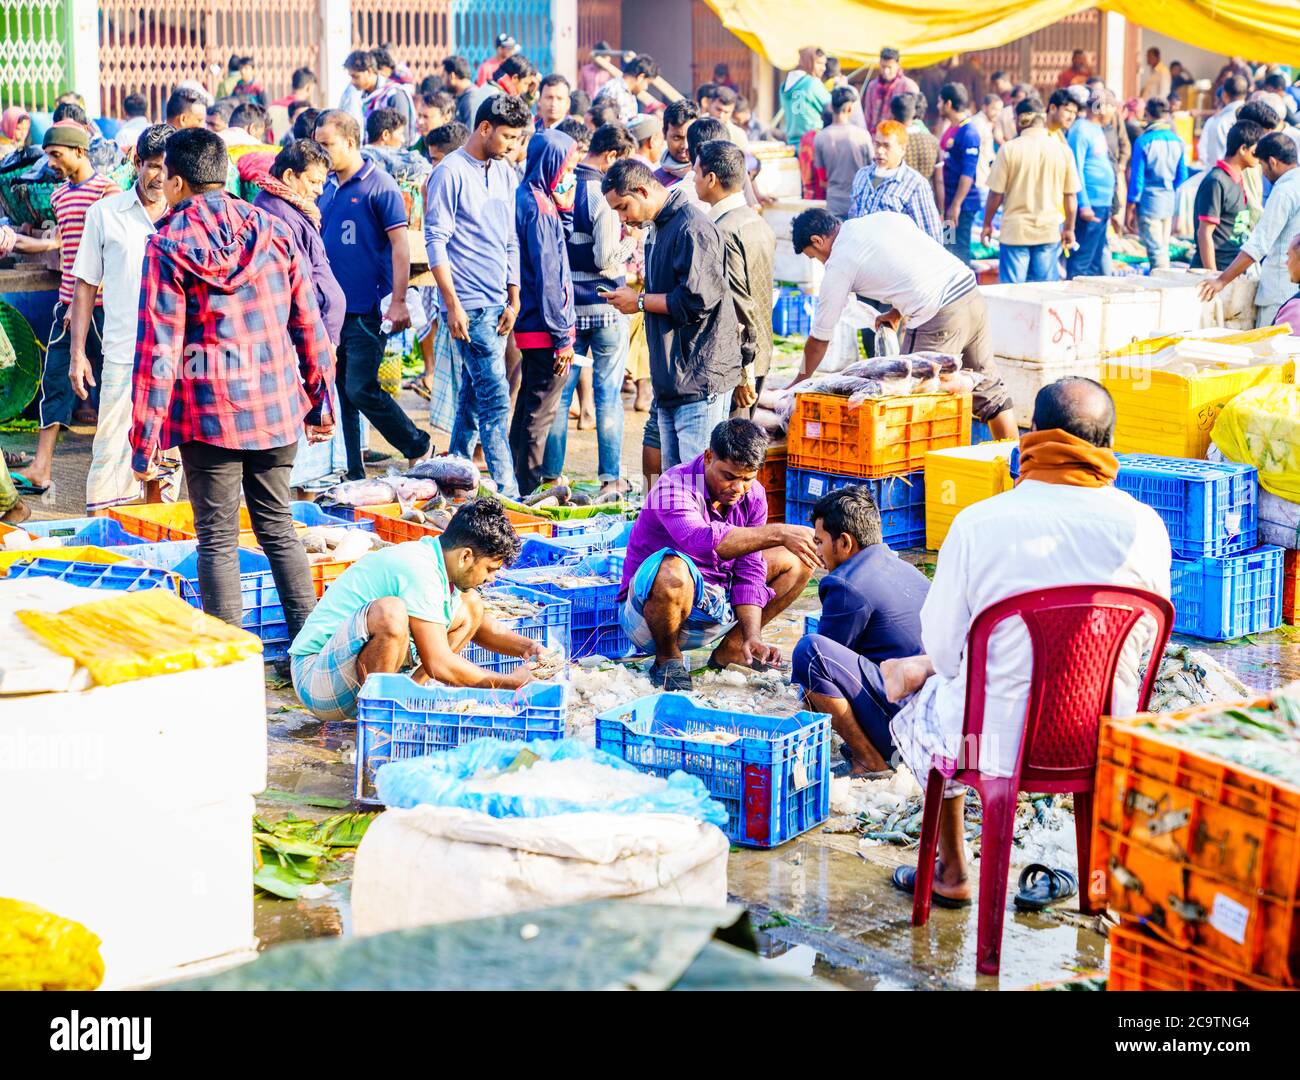 Chittagong, Bangladesh, December 23, 2017: Vendors sorting fish at the crowded market near Karnaphuli River in Chittagong Stock Photo